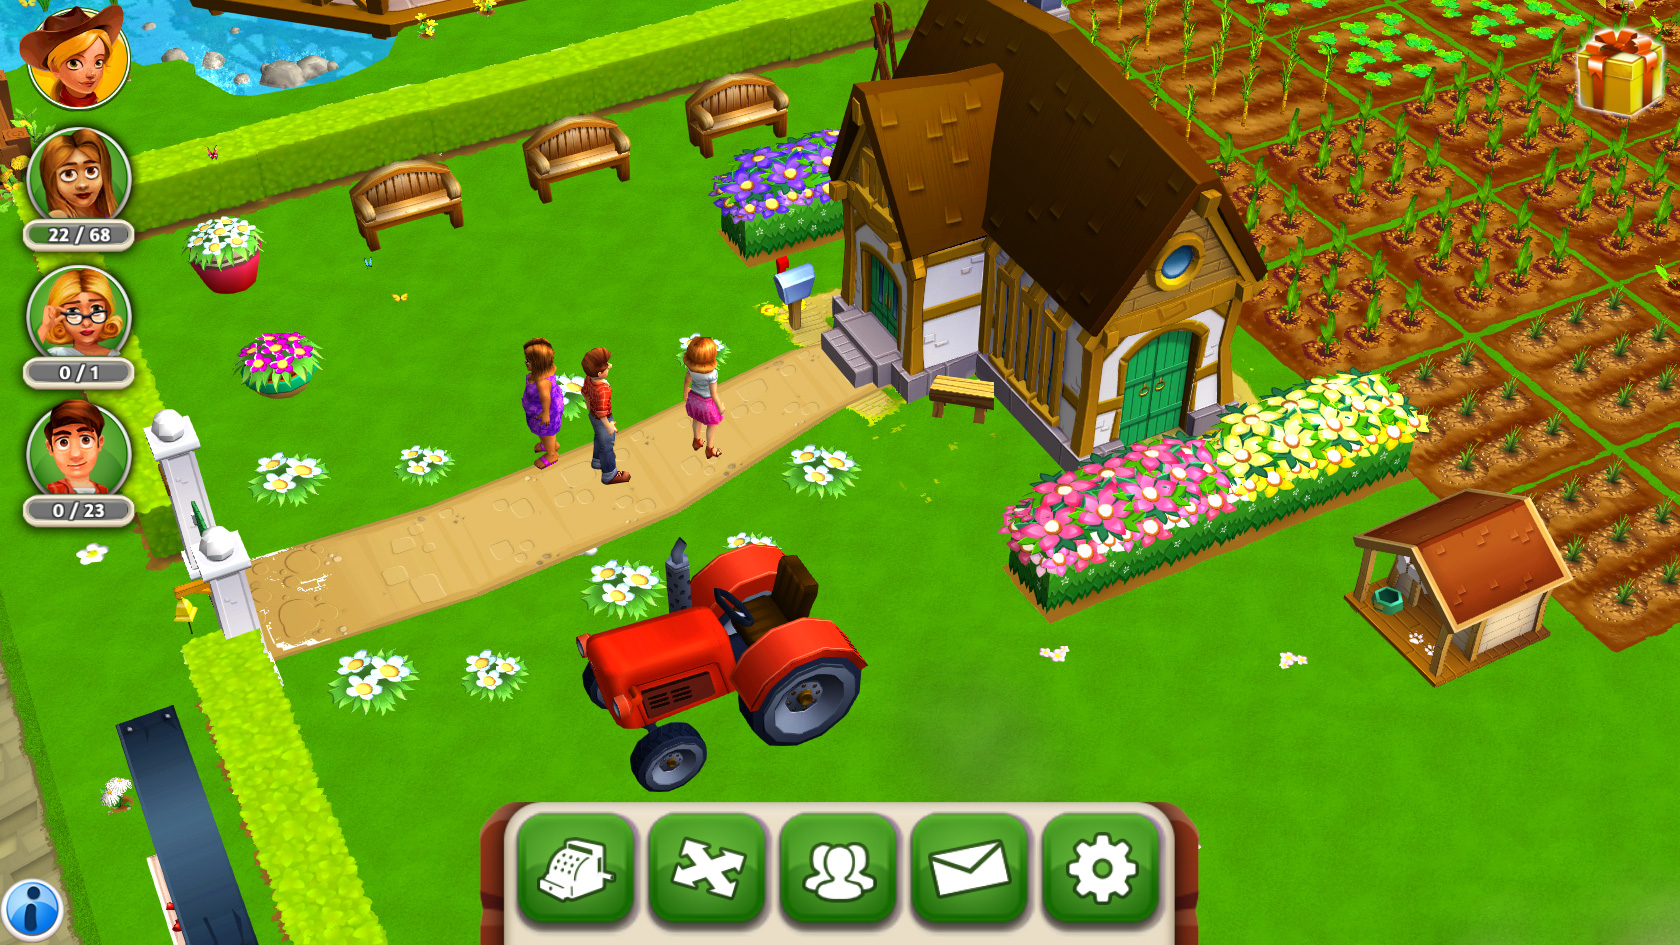 my free farm 2 rwiki